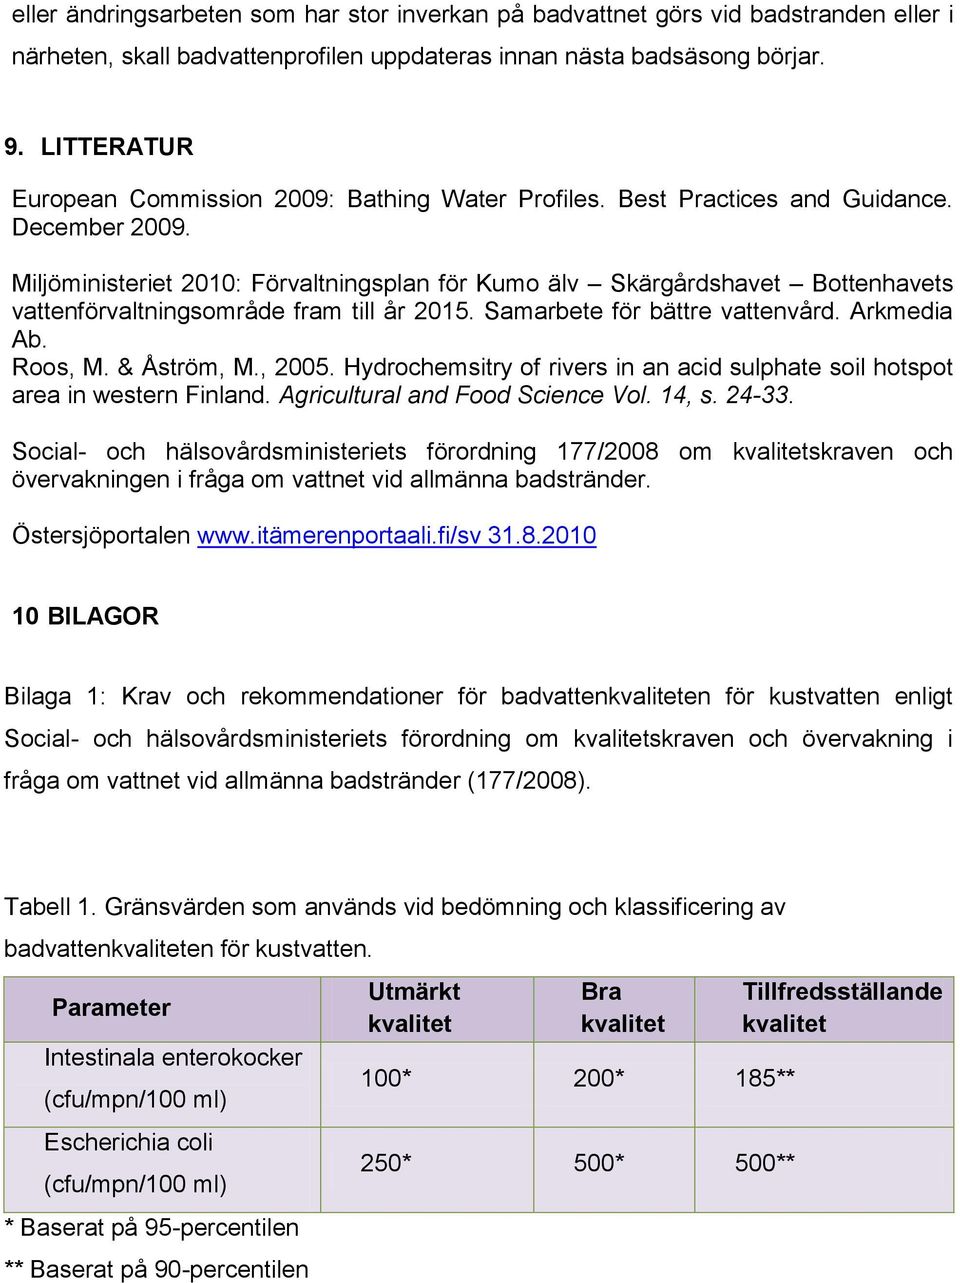 Miljöministeriet 2010: Förvaltningsplan för Kumo älv Skärgårdshavet Bottenhavets vattenförvaltningsområde fram till år 2015. Samarbete för bättre vattenvård. Arkmedia Ab. Roos, M. & Åström, M., 2005.